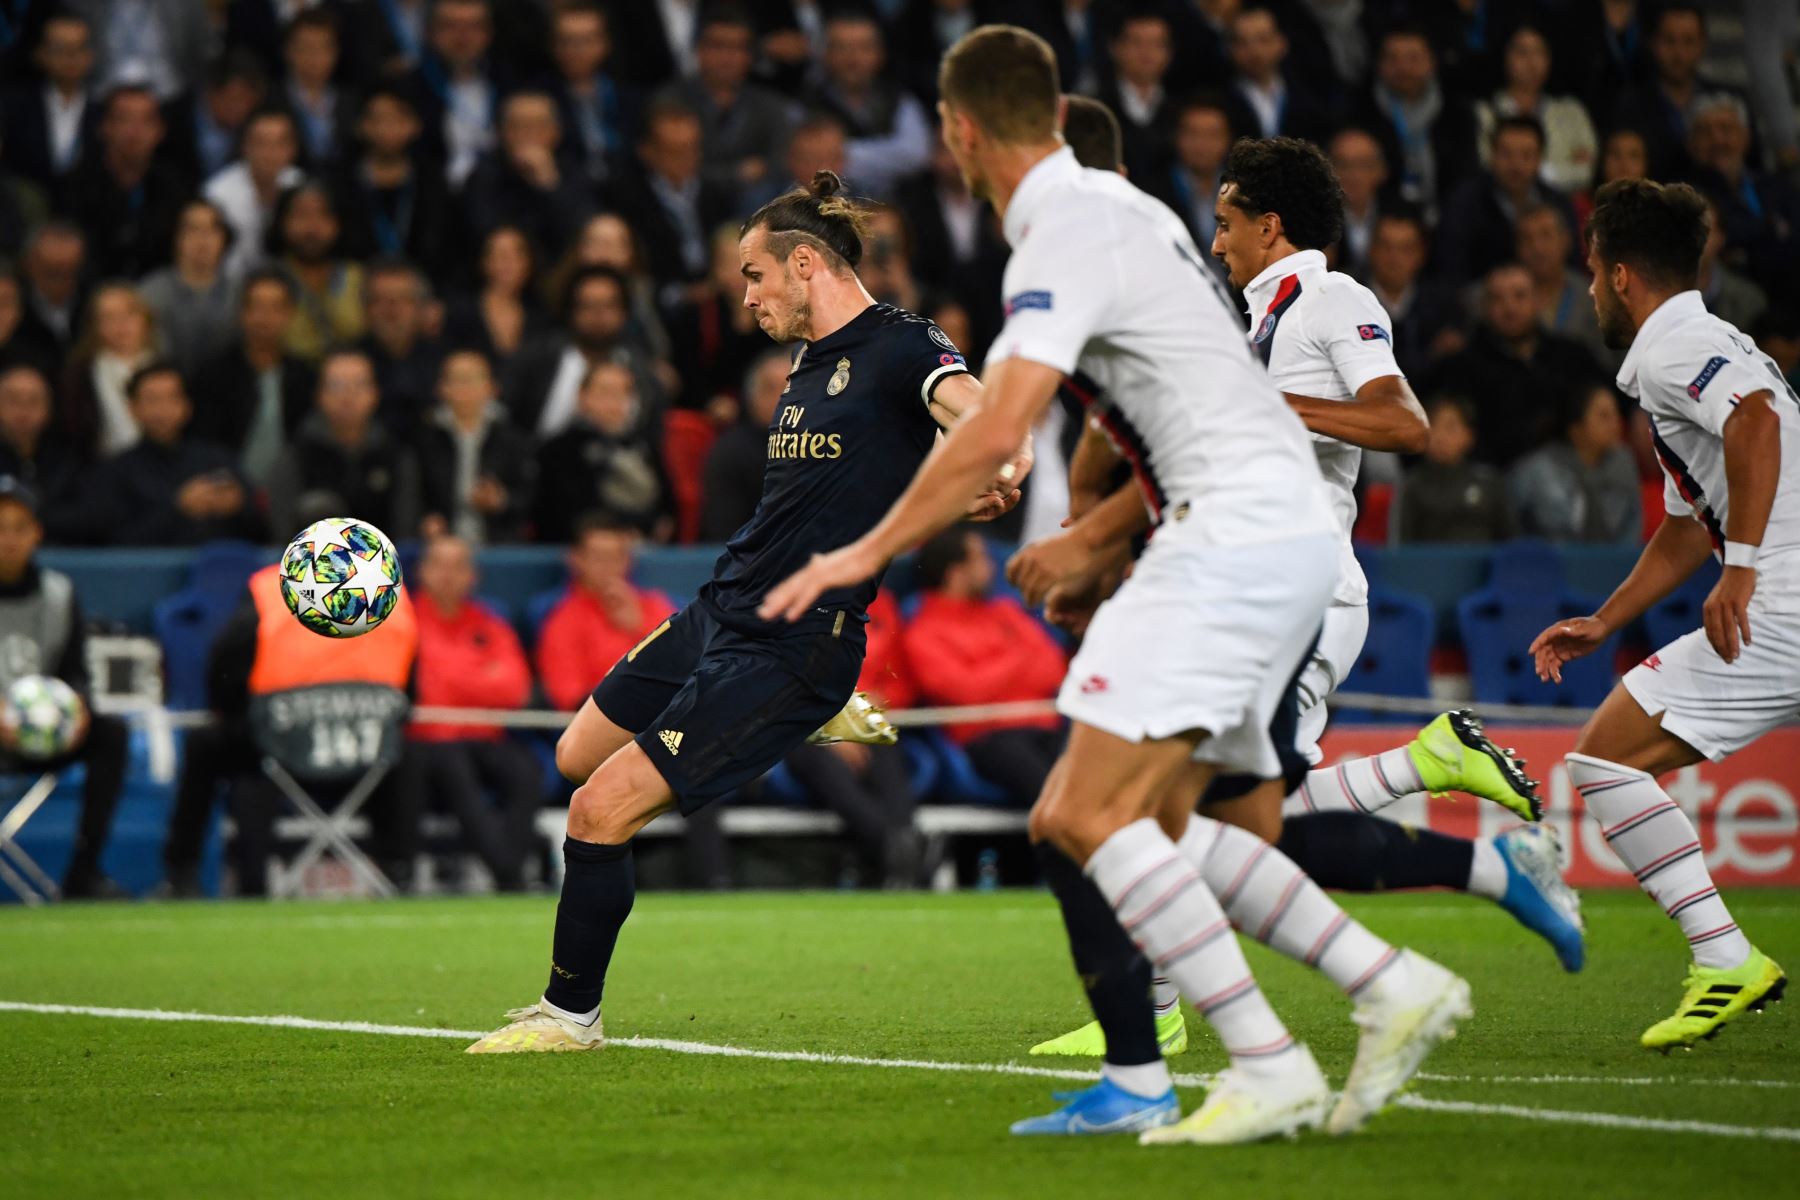 El alero galés del Real Madrid, Gareth Bale, controla el balón antes de disparar y anotar durante el partido de fútbol del Grupo A de la Liga de Campeones de la UEFA entre el París Saint-Germain y el Real Madrid.
Foto:AFP